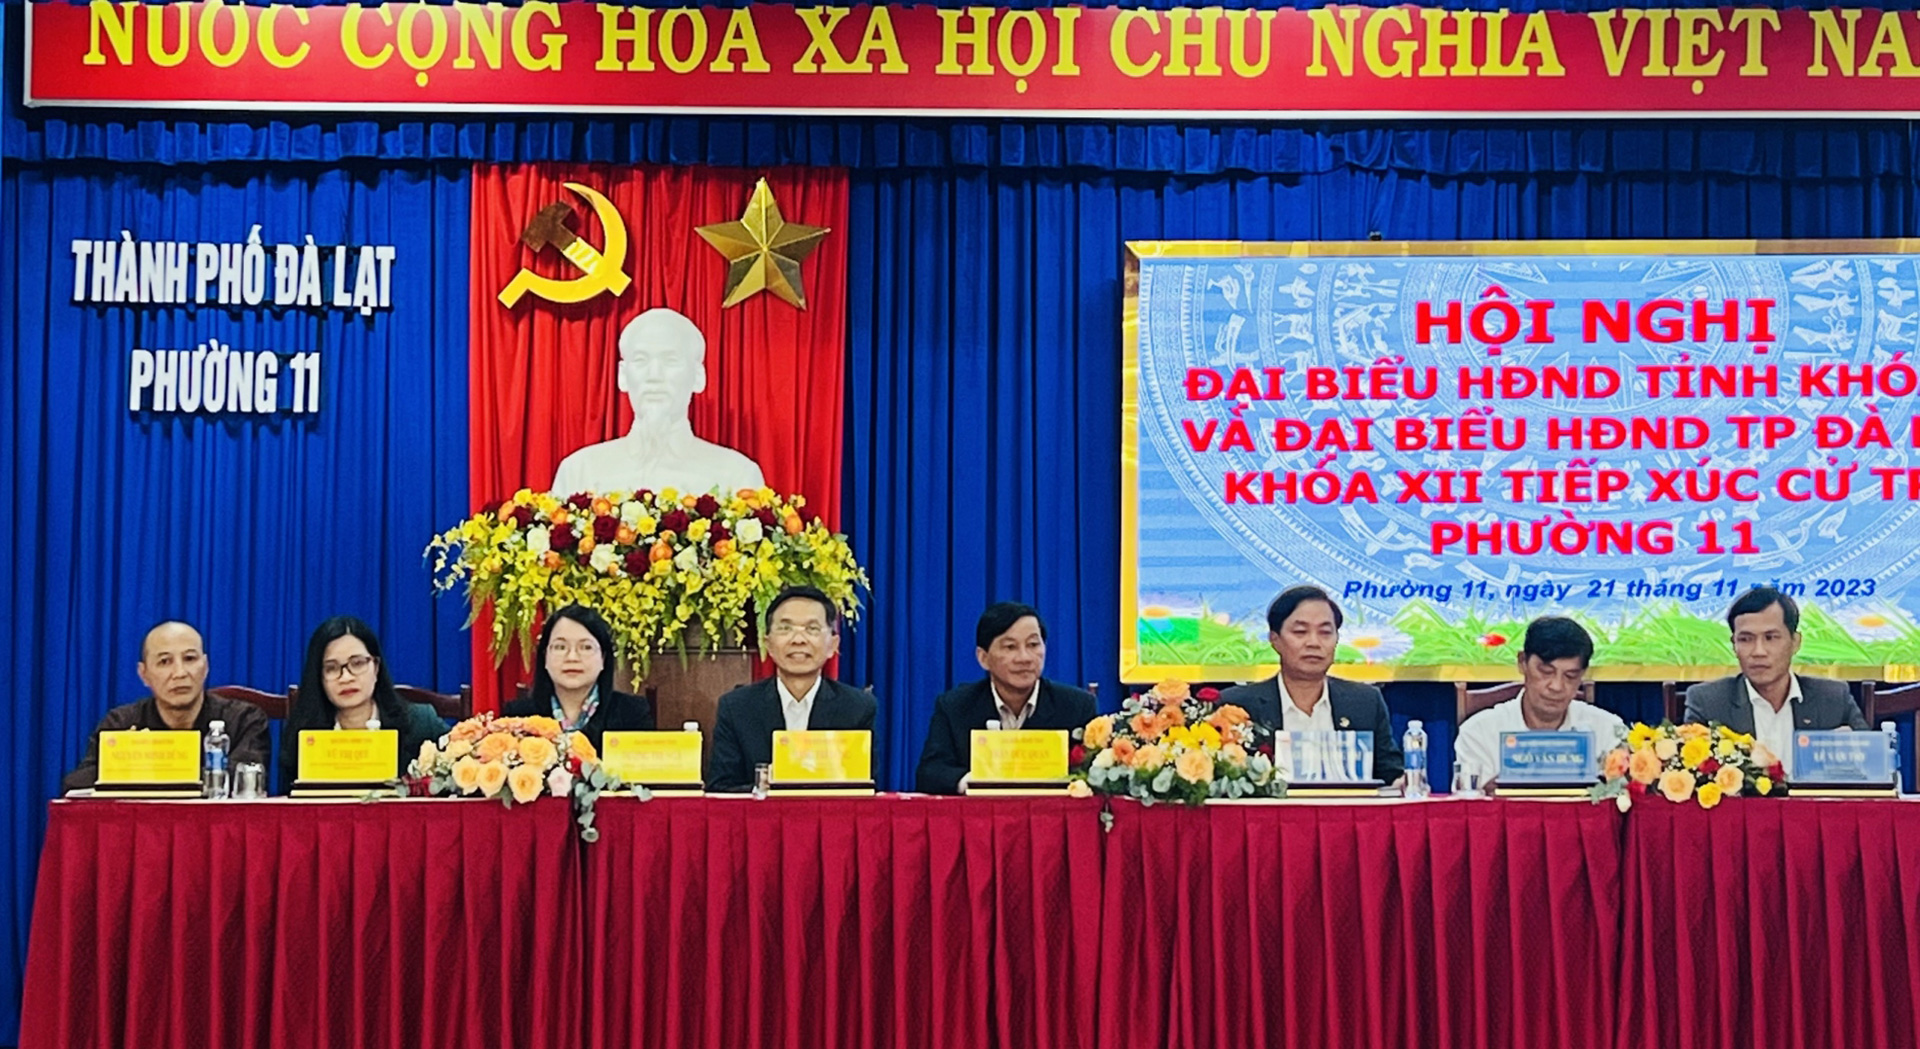 Đại biểu HĐND tỉnh và thành phố Đà Lạt tiếp xúc cử tri phường 11